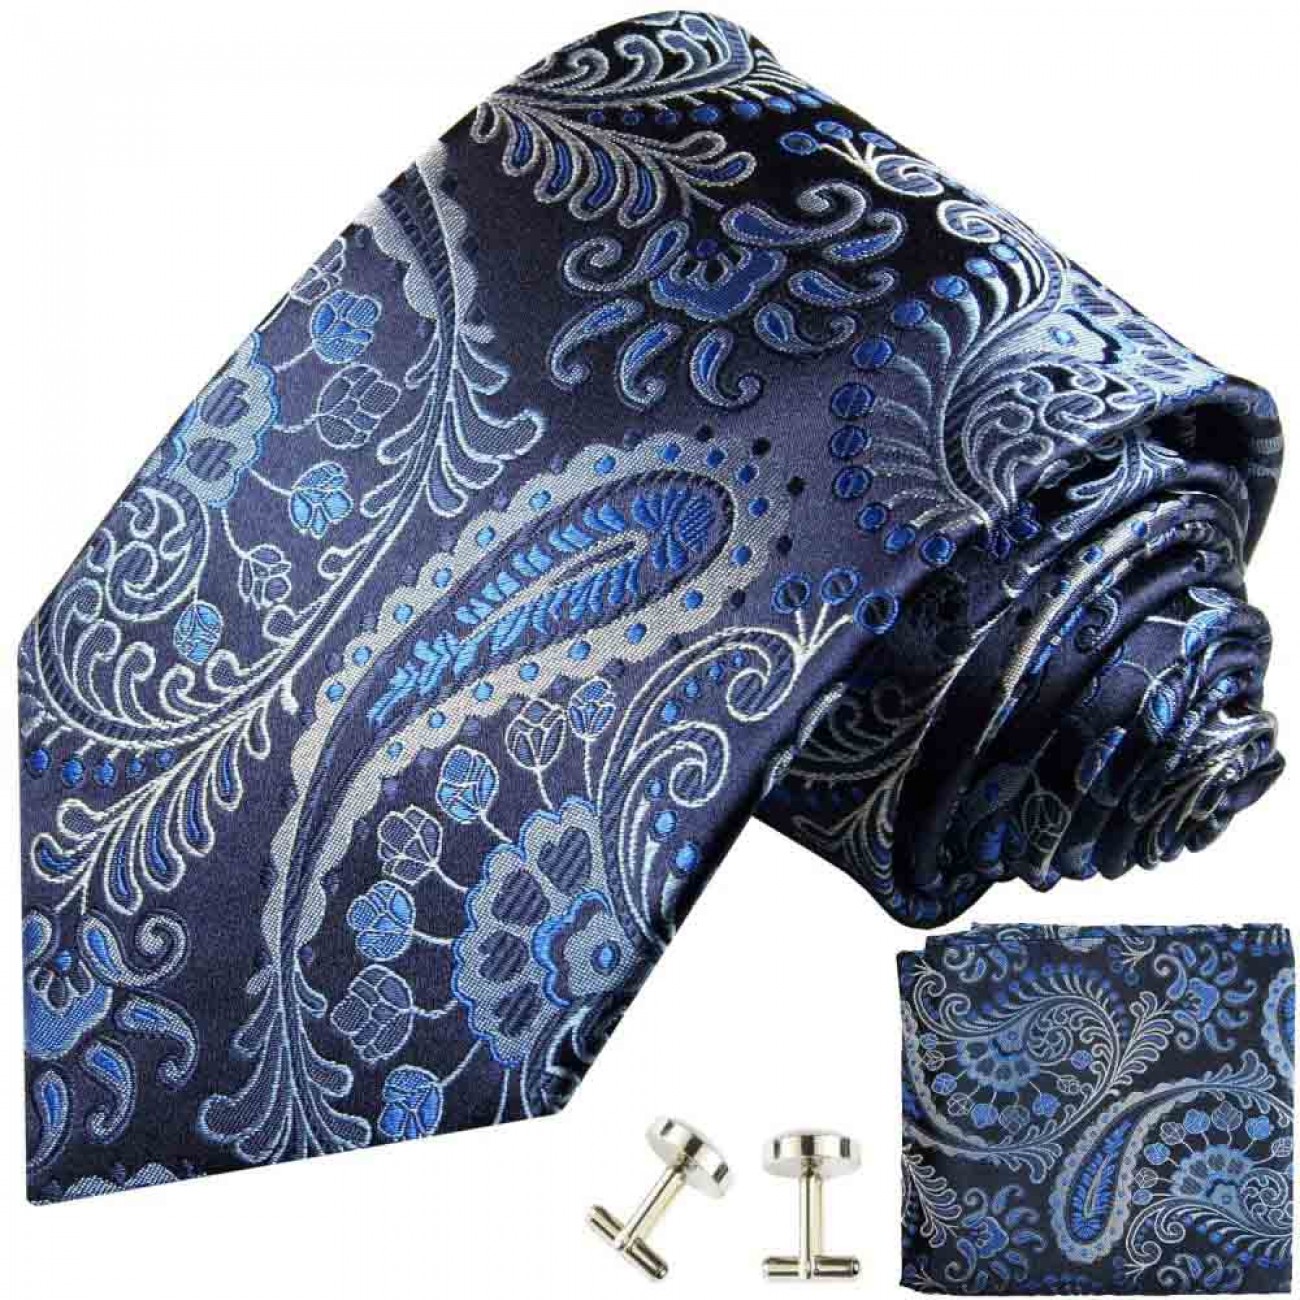 Schwarz blaues paisley Krawatten Set 3tlg 100% Seidenkrawatte + Einstecktuch  + Manschettenknöpfe 551 - Paul Malone Shop